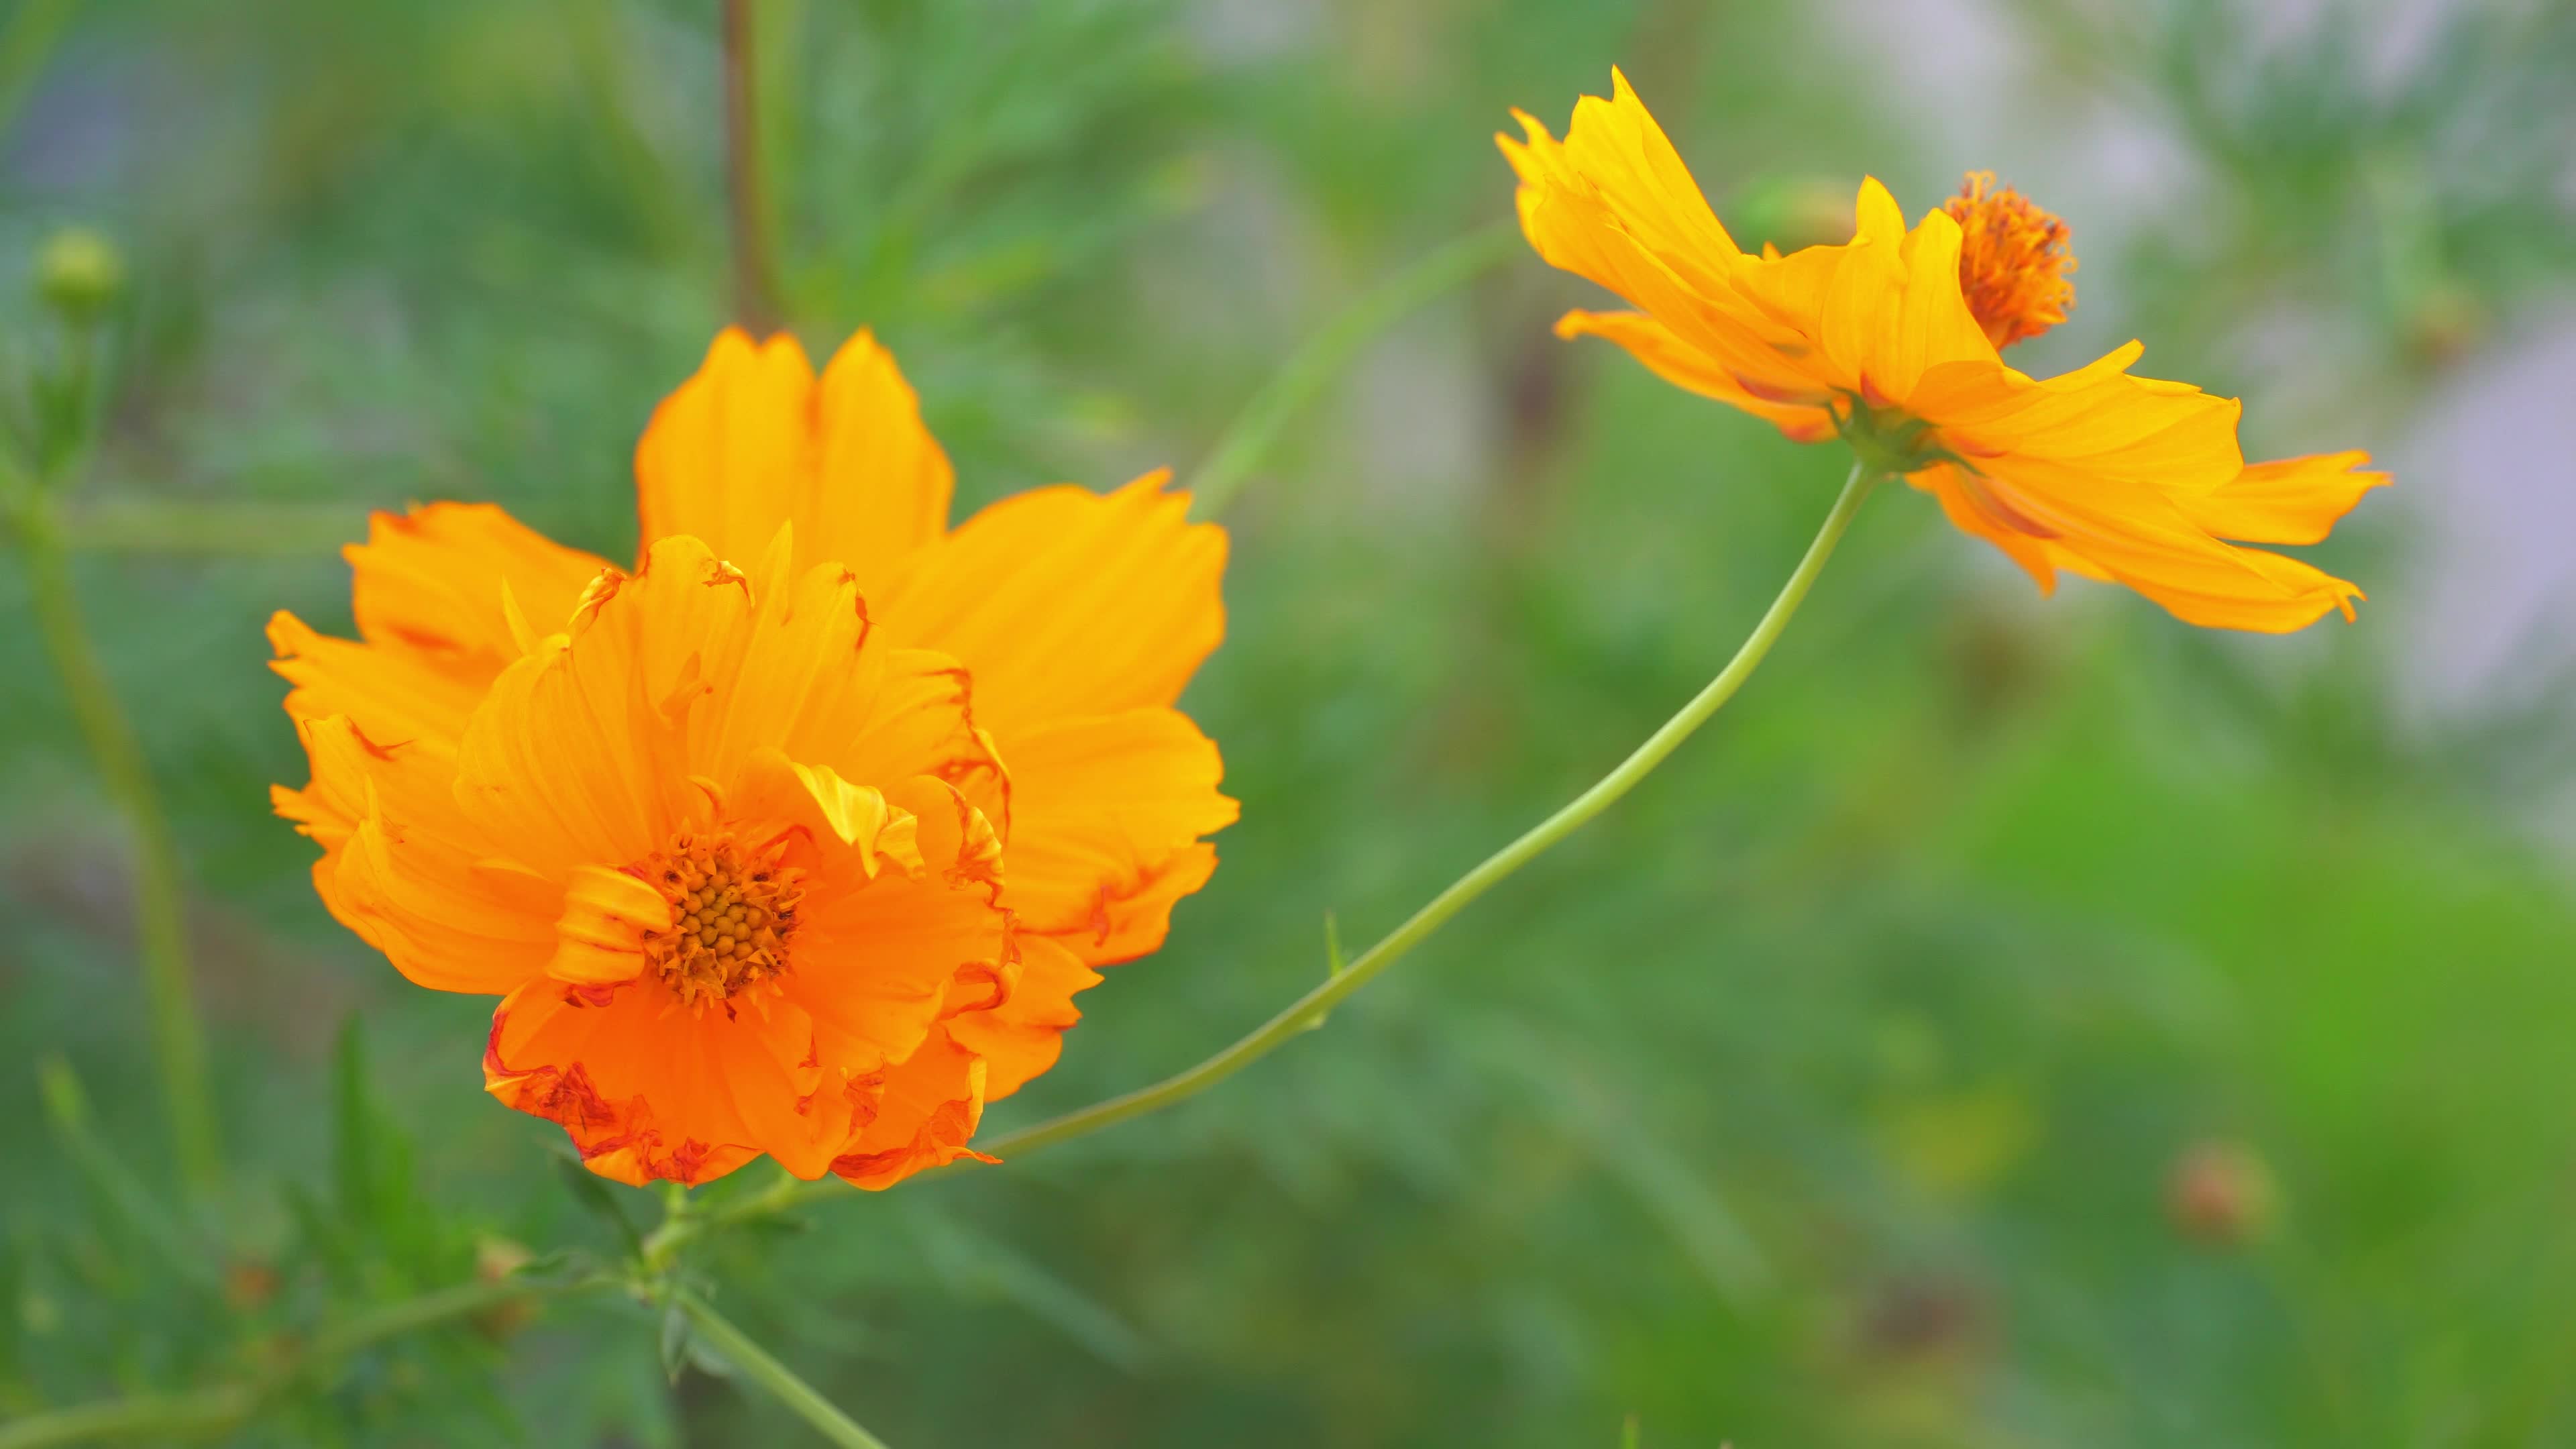 Hoa cosmos màu cam rực rỡ sẽ khiến bạn say đắm vào sức hấp dẫn tự nhiên. Với độ phân giải 4K và màu sắc tuyệt đẹp, video sẽ đưa bạn vào trải nghiệm khắc khoải của một loài hoa đẹp đến từ thiên nhiên!